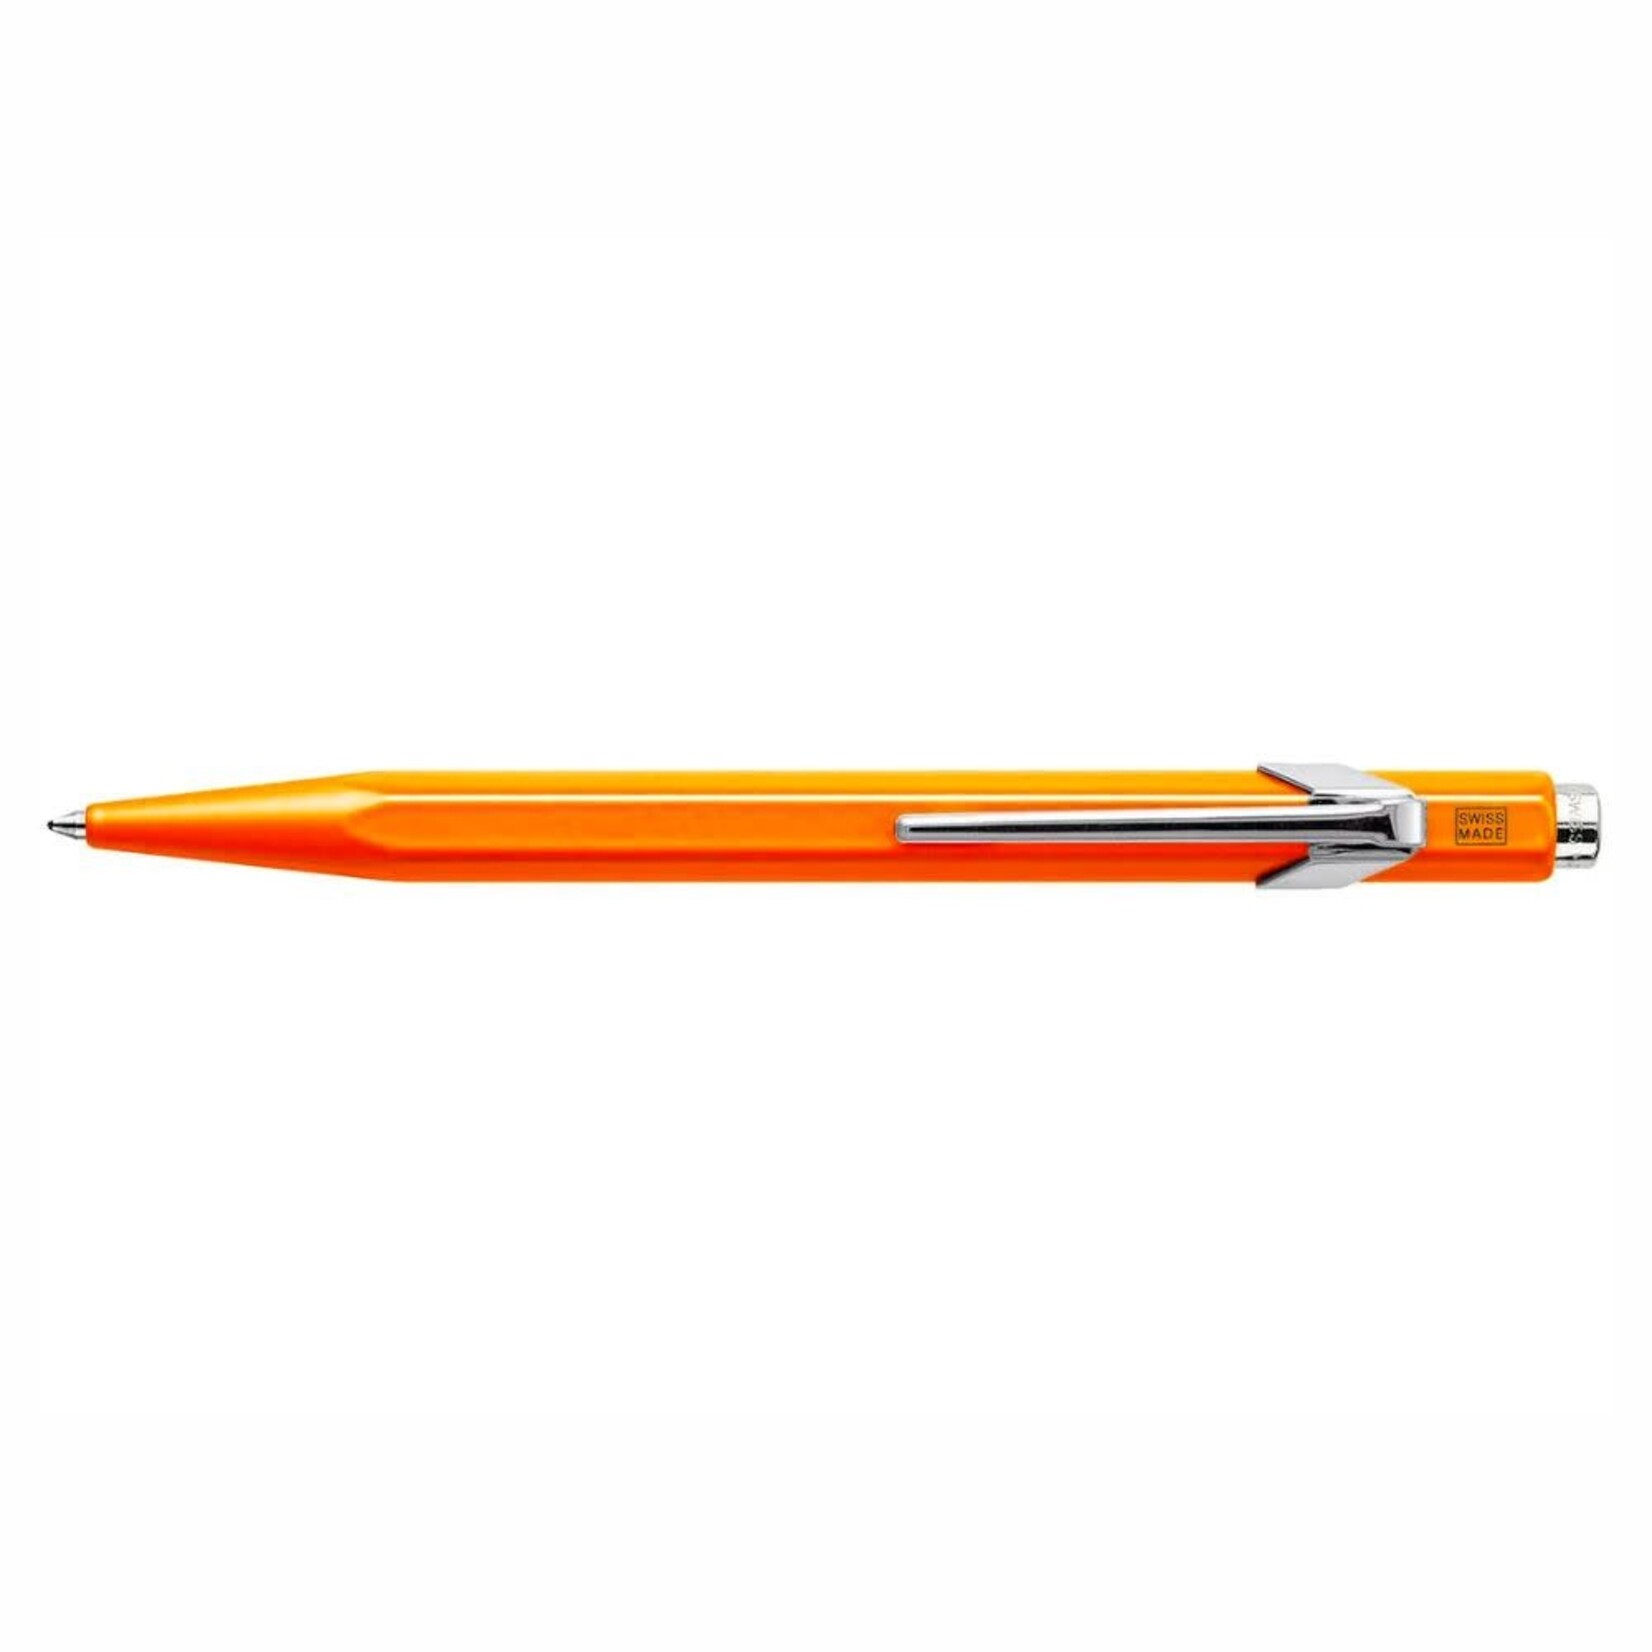 Caran d'Ache Caran D'Ache 849 Series Ballpoint Pen, Fluorescent Orange